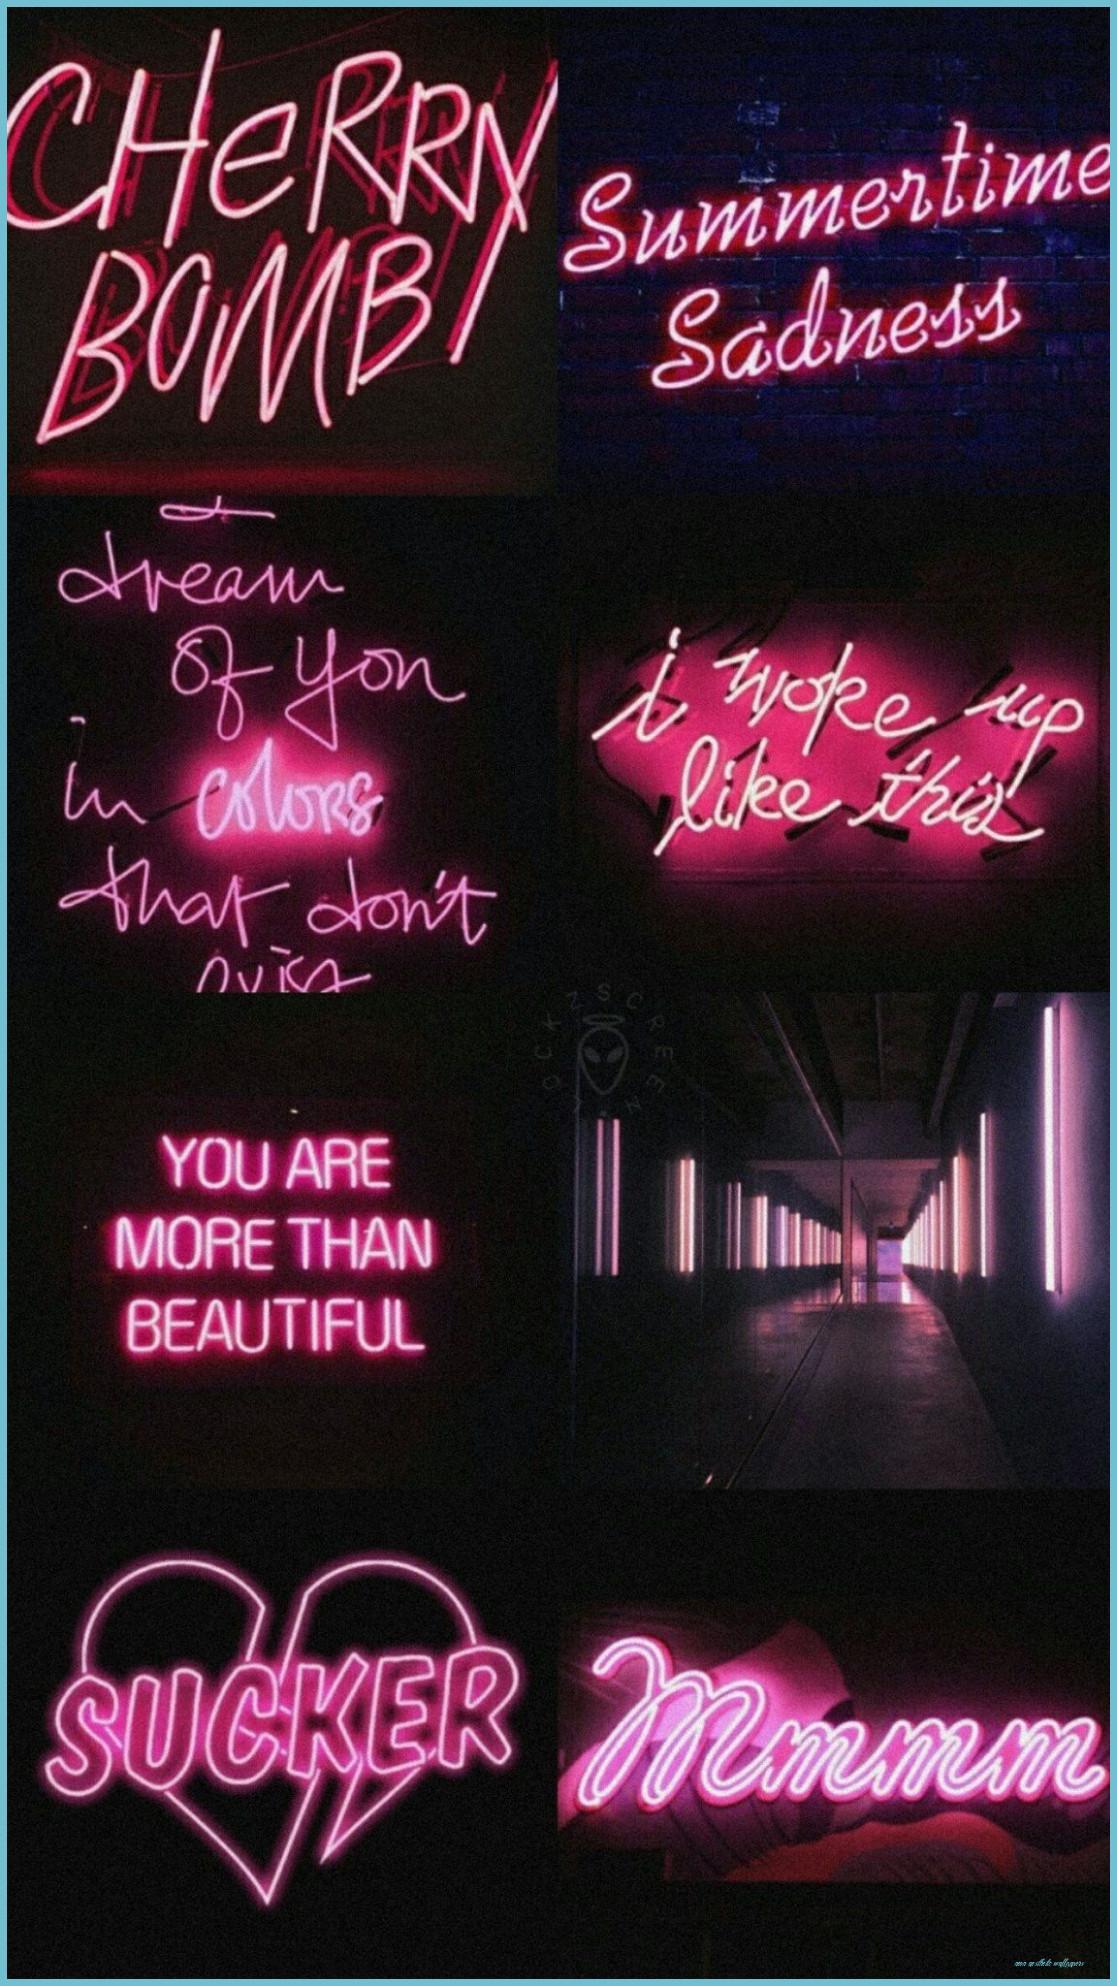 Hình nền thẩm mỹ Neon màu hồng 1117x1986 - Hình nền thẩm mỹ neon màu hồng miễn phí hàng đầu - Hình nền thẩm mỹ neon